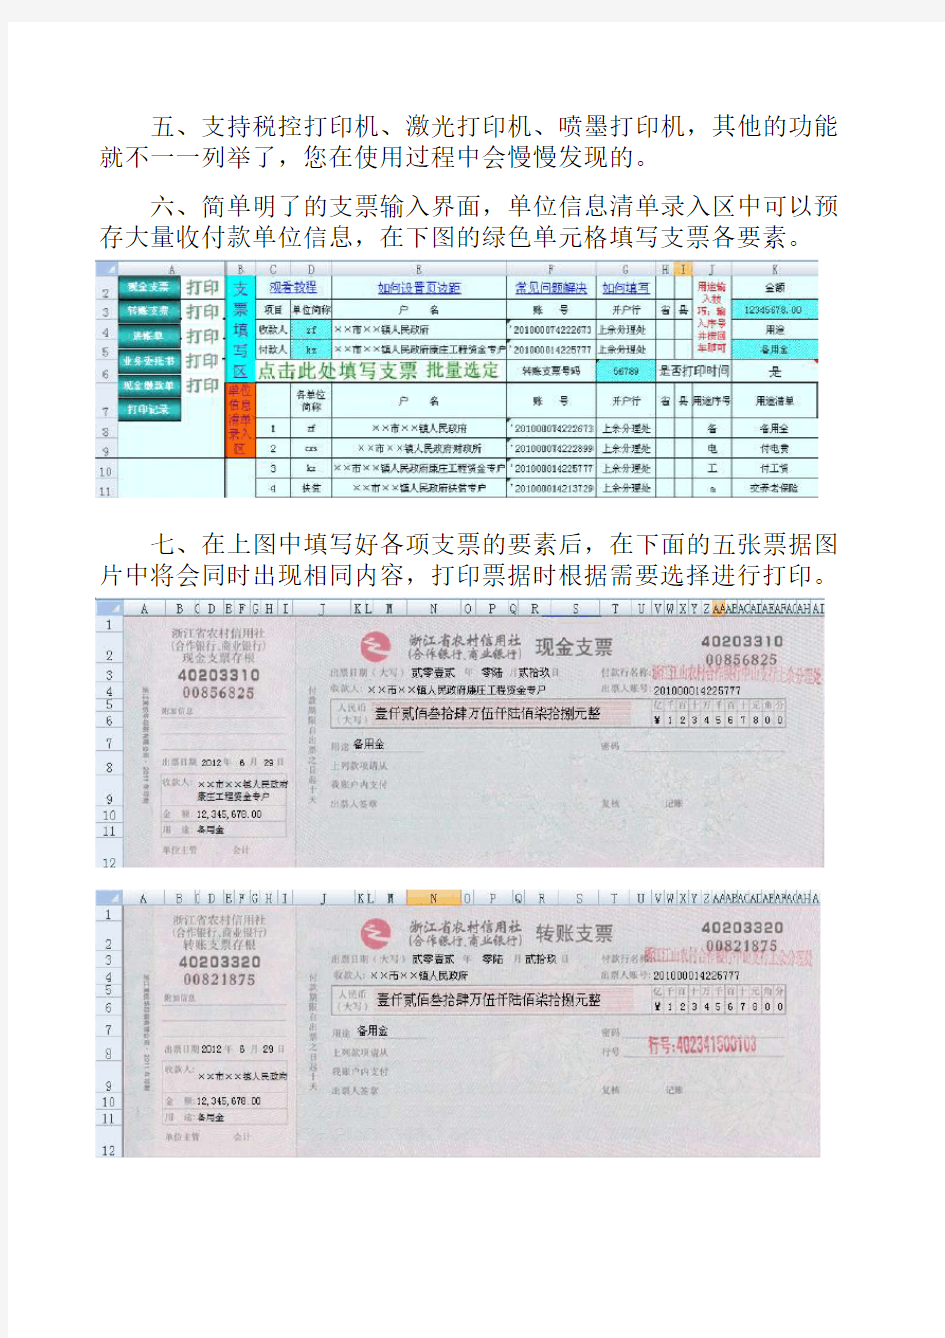 中国中信银行支票打印模板下载